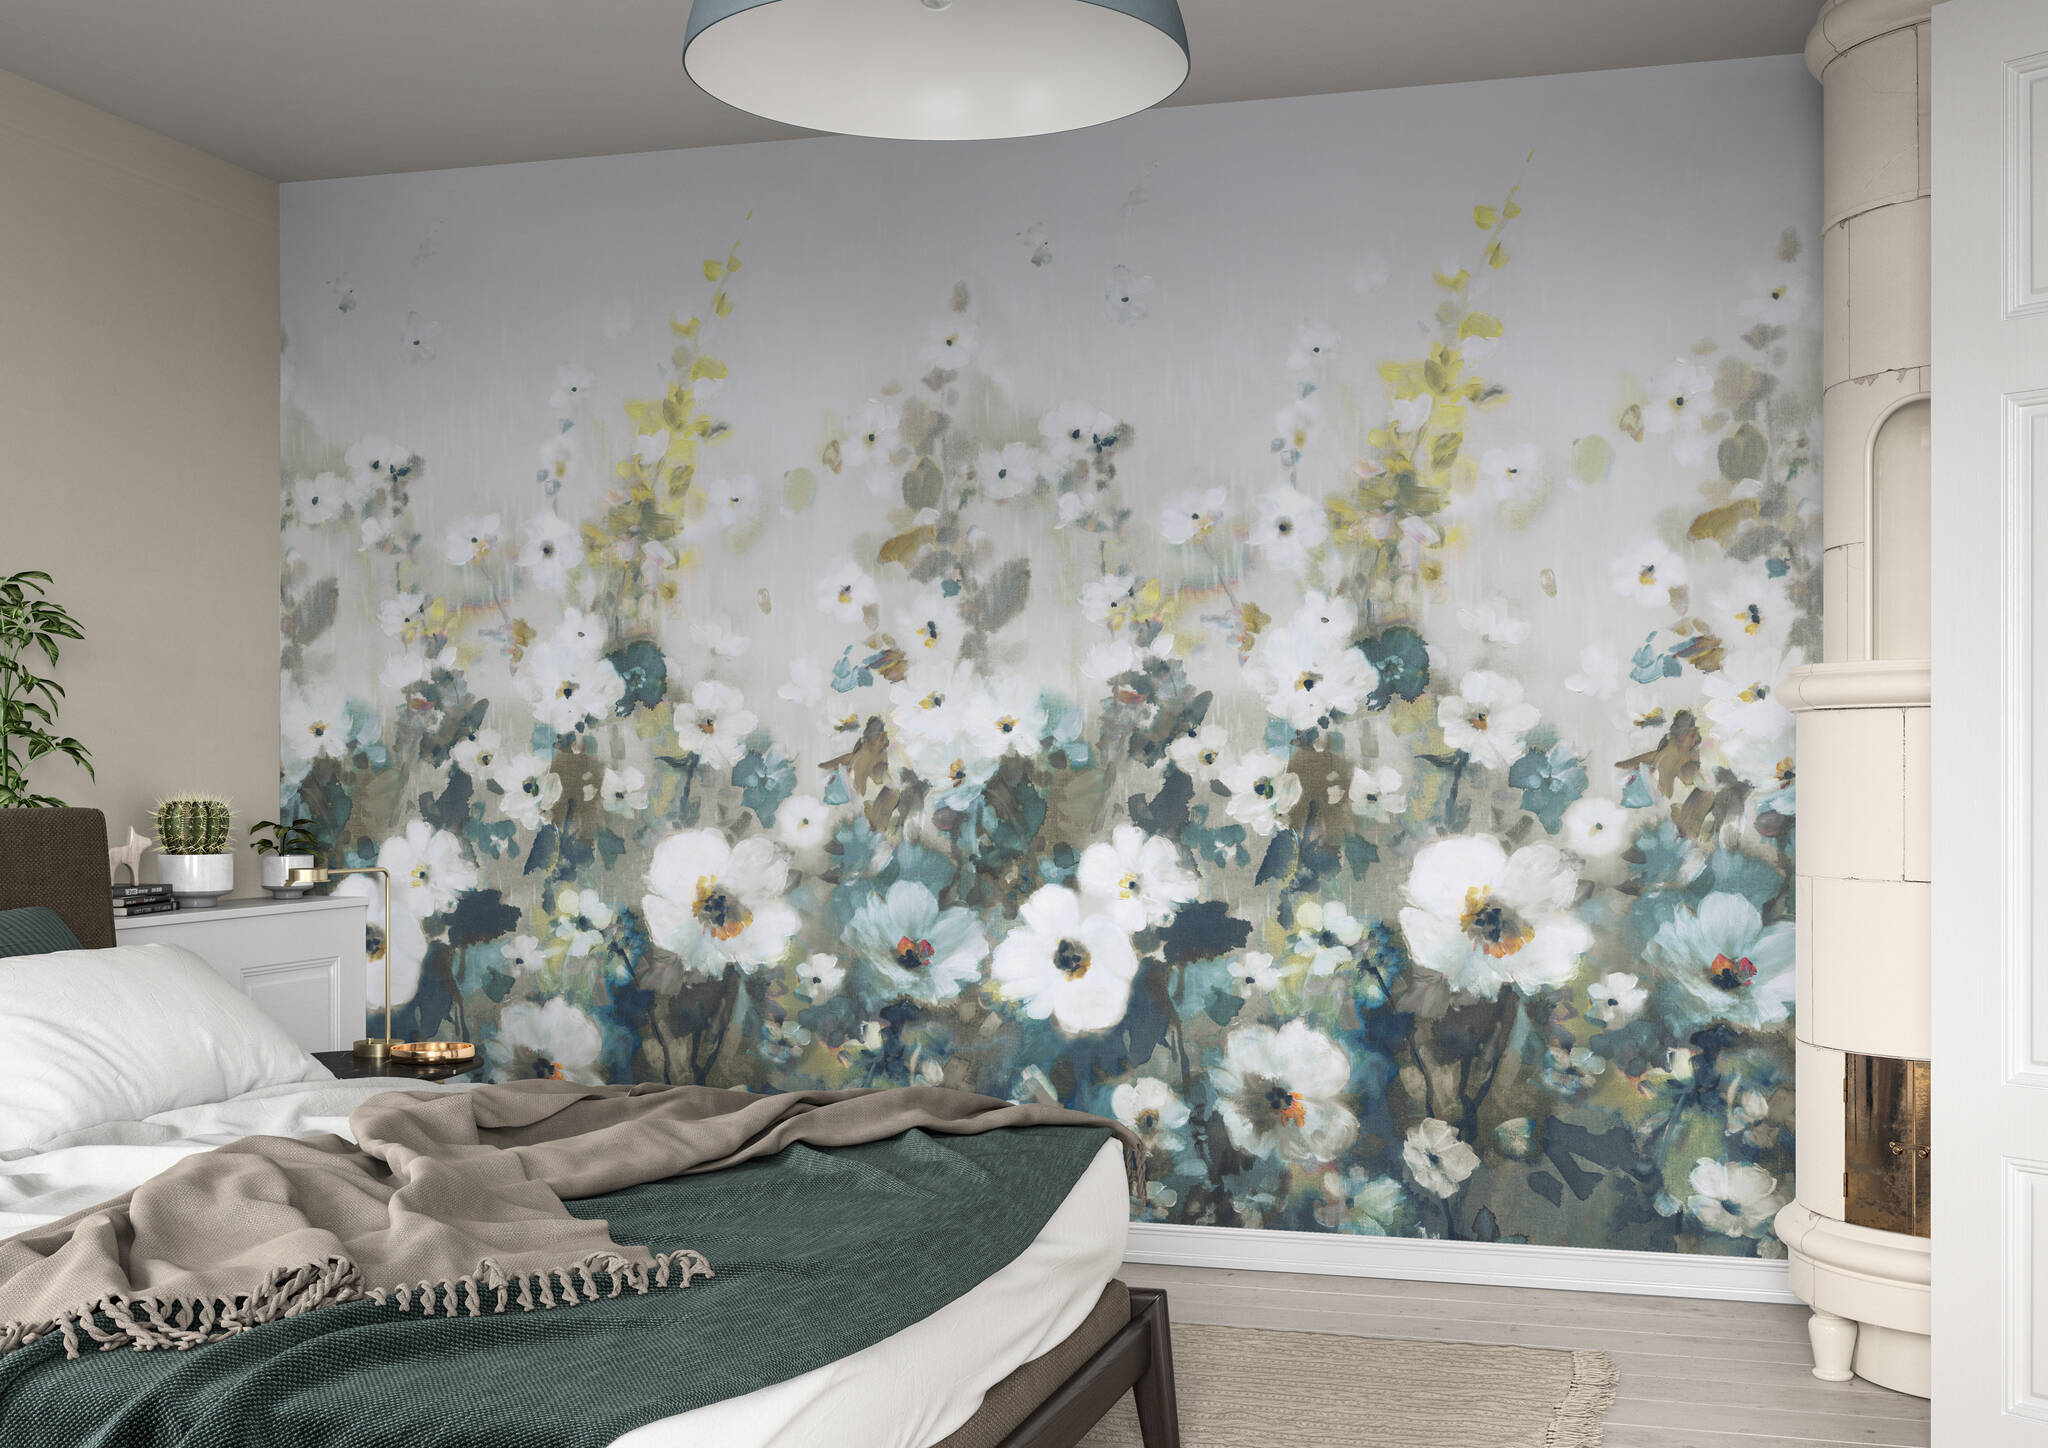 Schlafzimmer mit Wandbild - Sommerblumenwiese in zartem Grün und türkisen Highlights